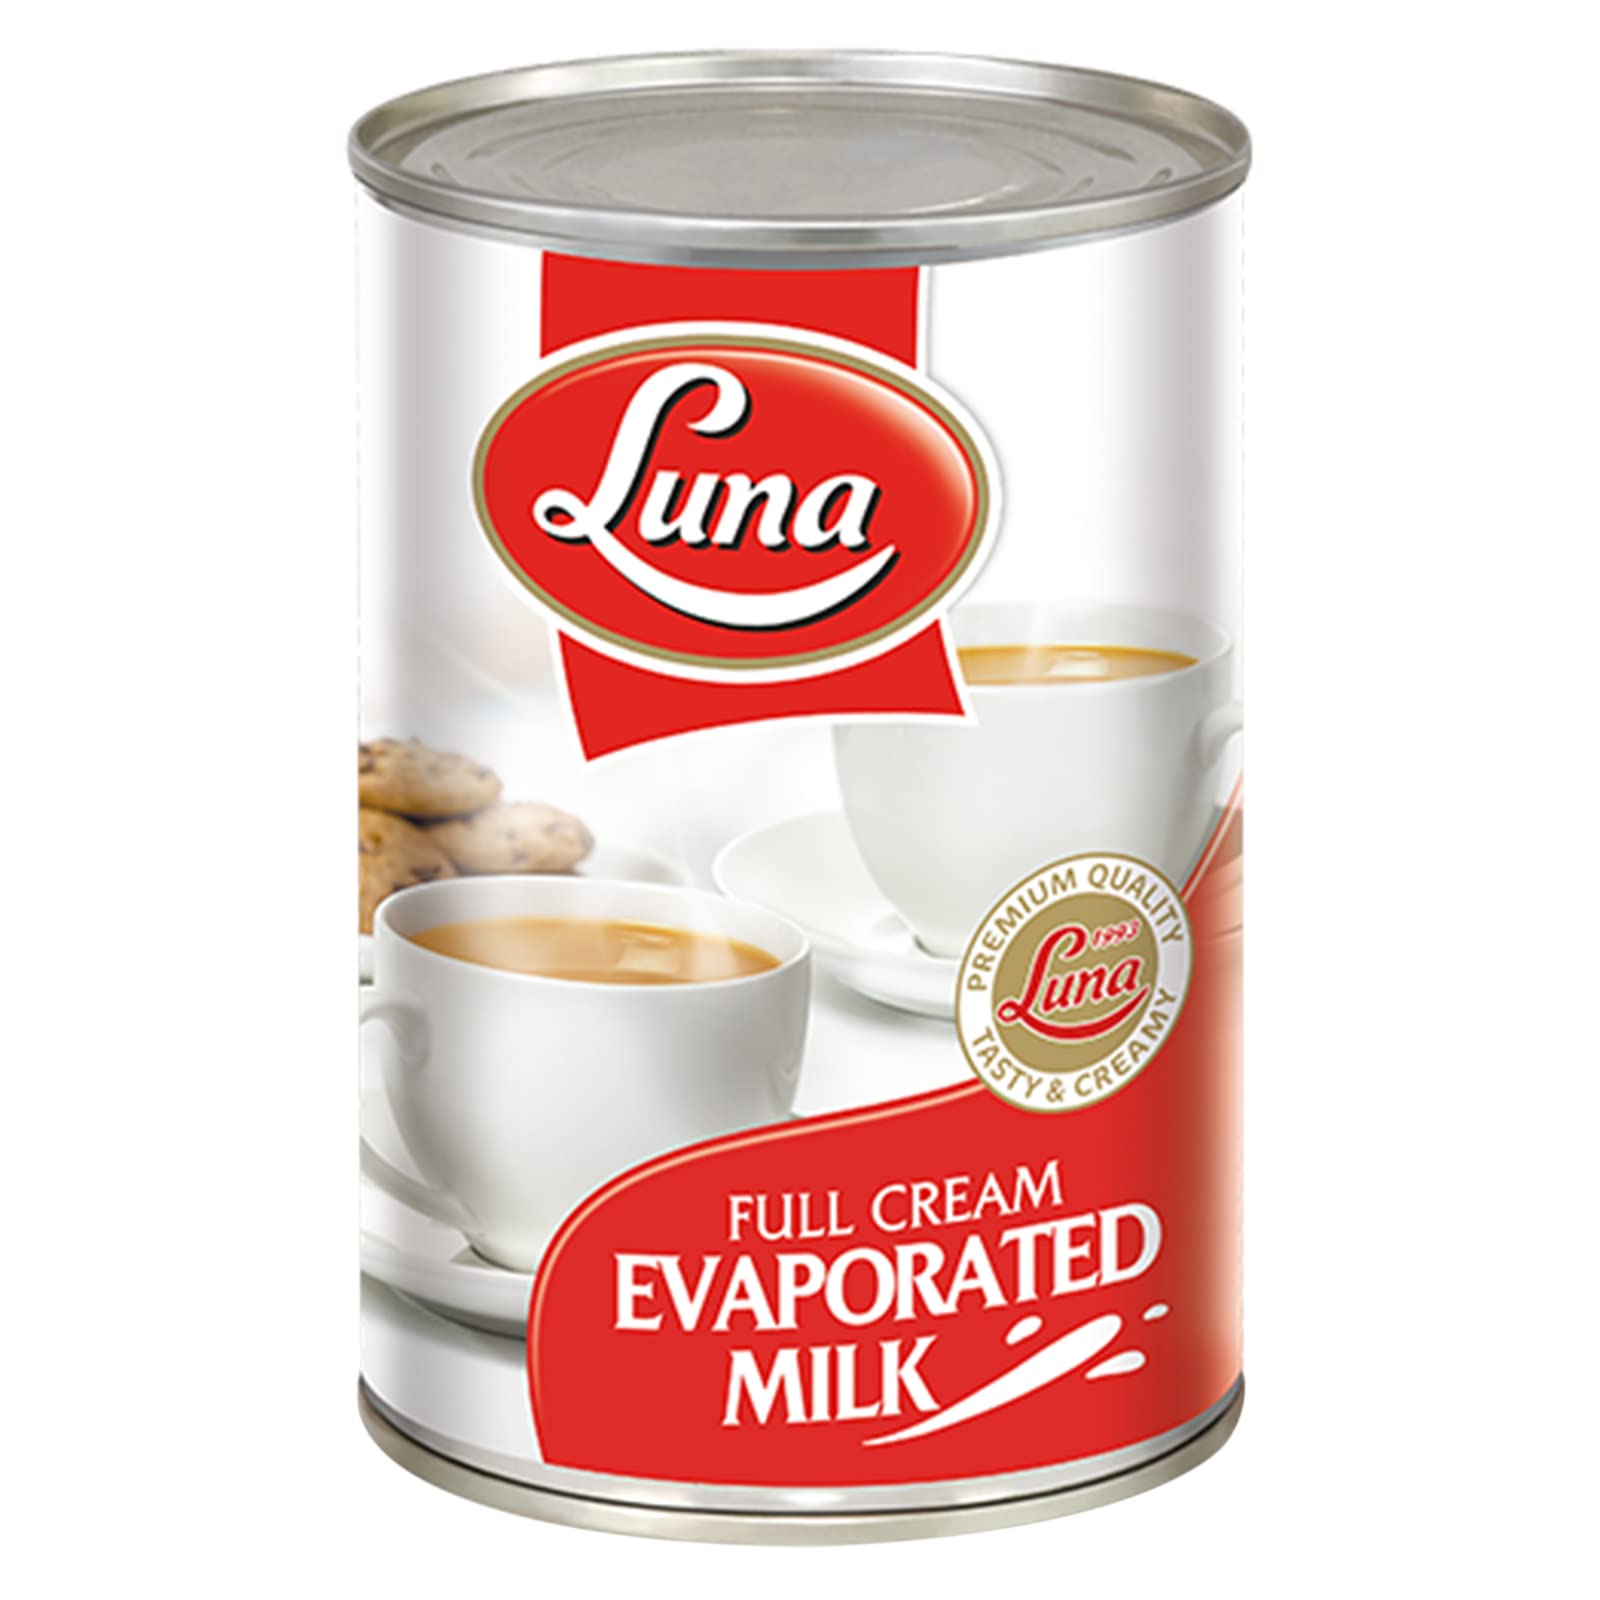 luna-full-cream-evaporated-milk-400g